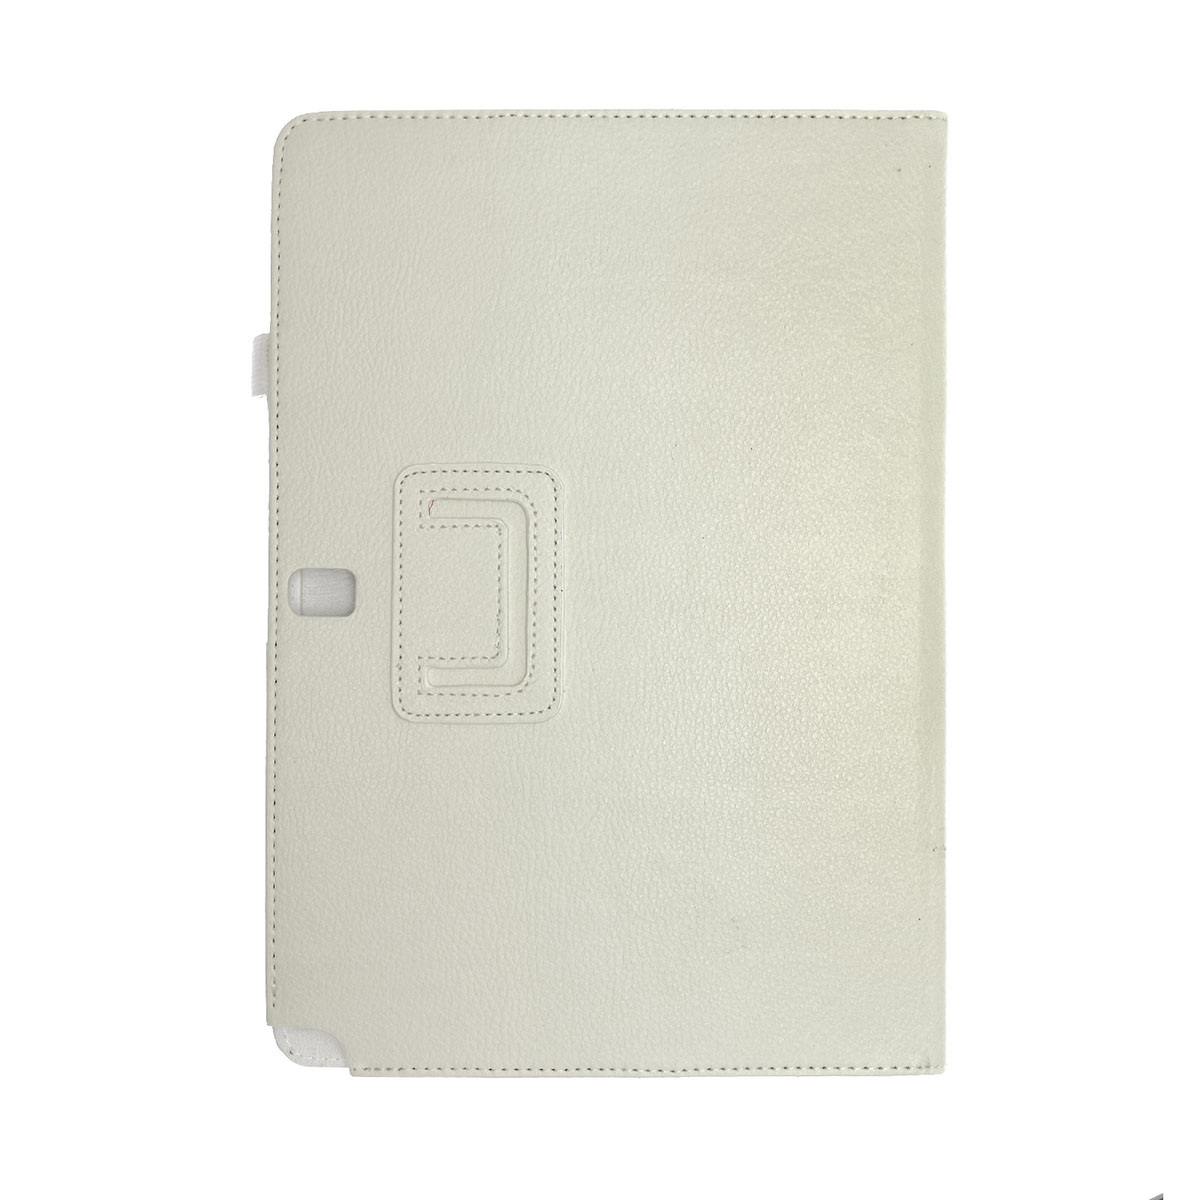 Чехол книжка для SAMSUNG Galaxy Note Pro 12.2 (SM-P900), экокожа, цвет белый.